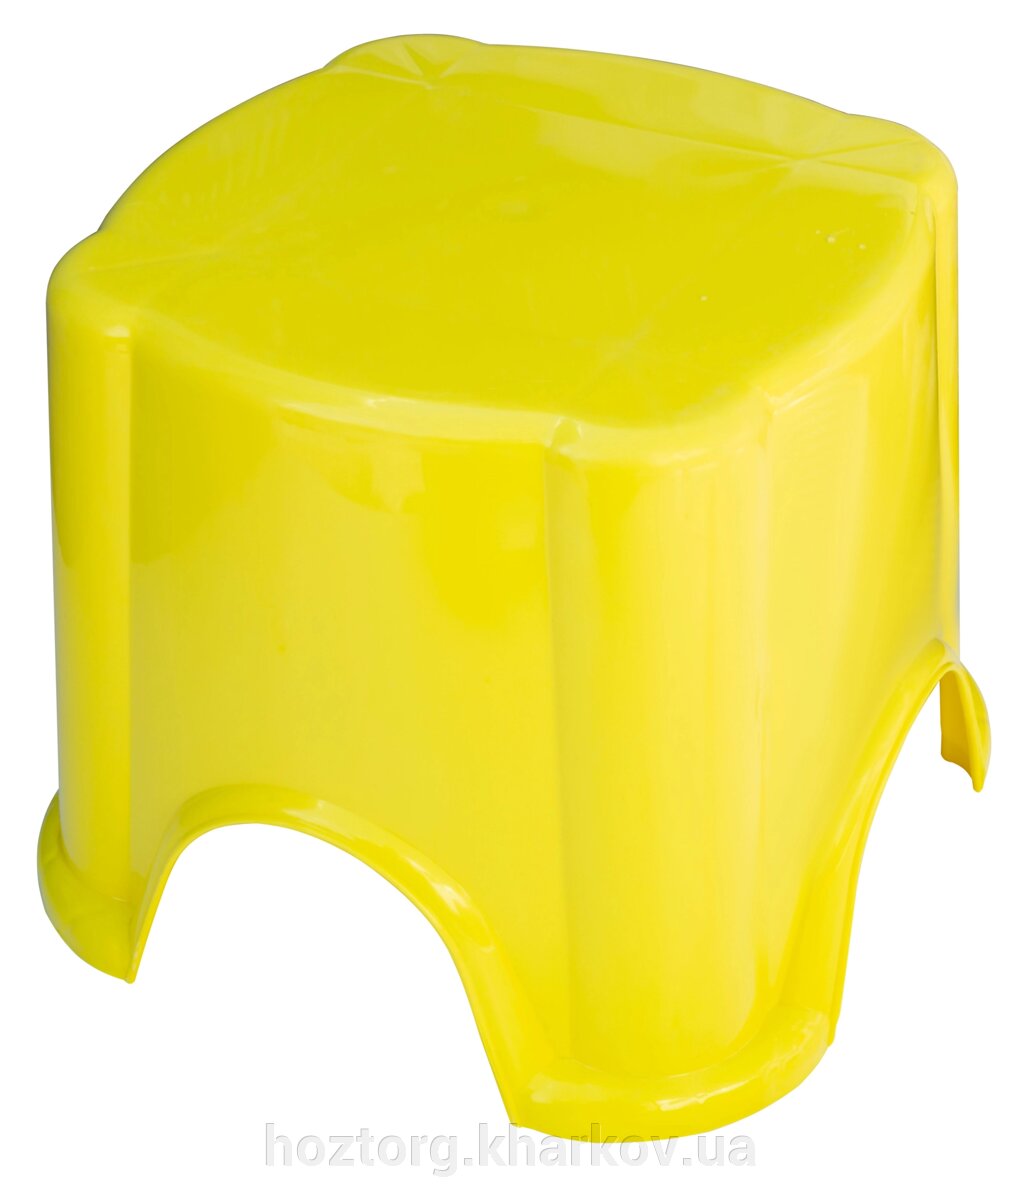 Табурет дитячий жовтий, висота 20.5 см (ПолімерАгро) від компанії Інтернет-магазин Хозторг Харків. Господарські товари оптом - фото 1